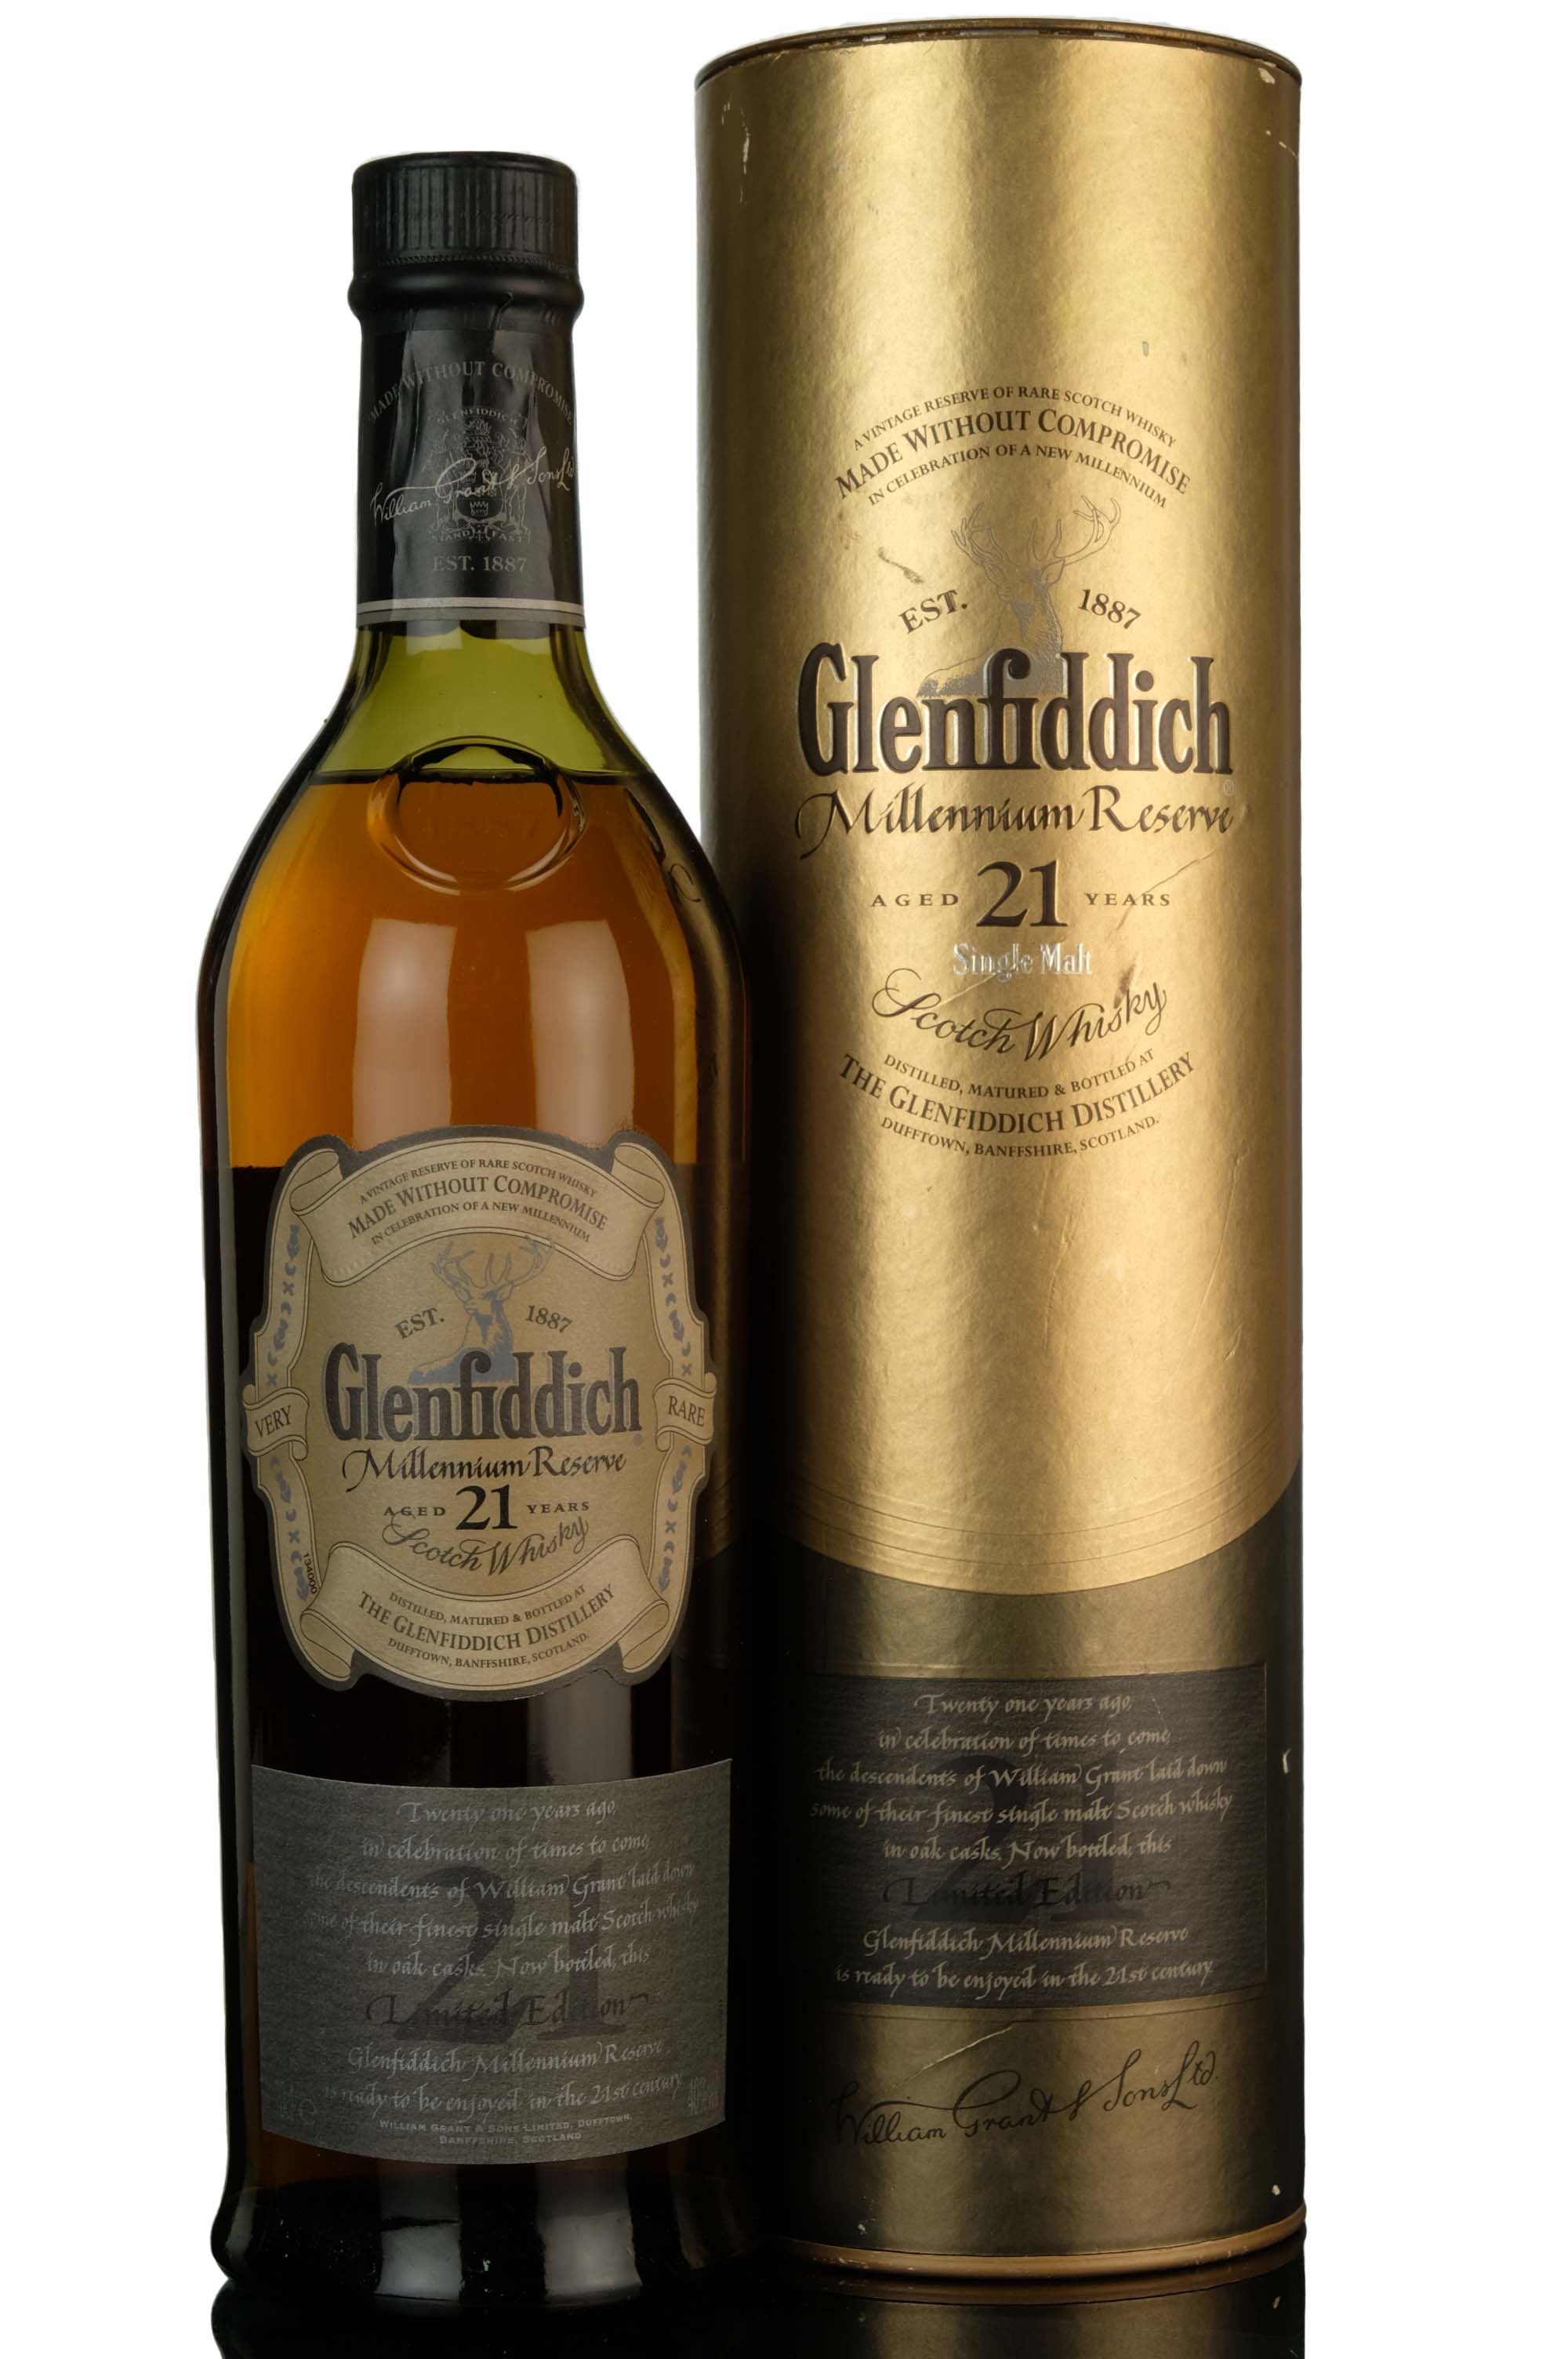 Glenfiddich 21 Year Old - Millennium Reserve - 1999 Release